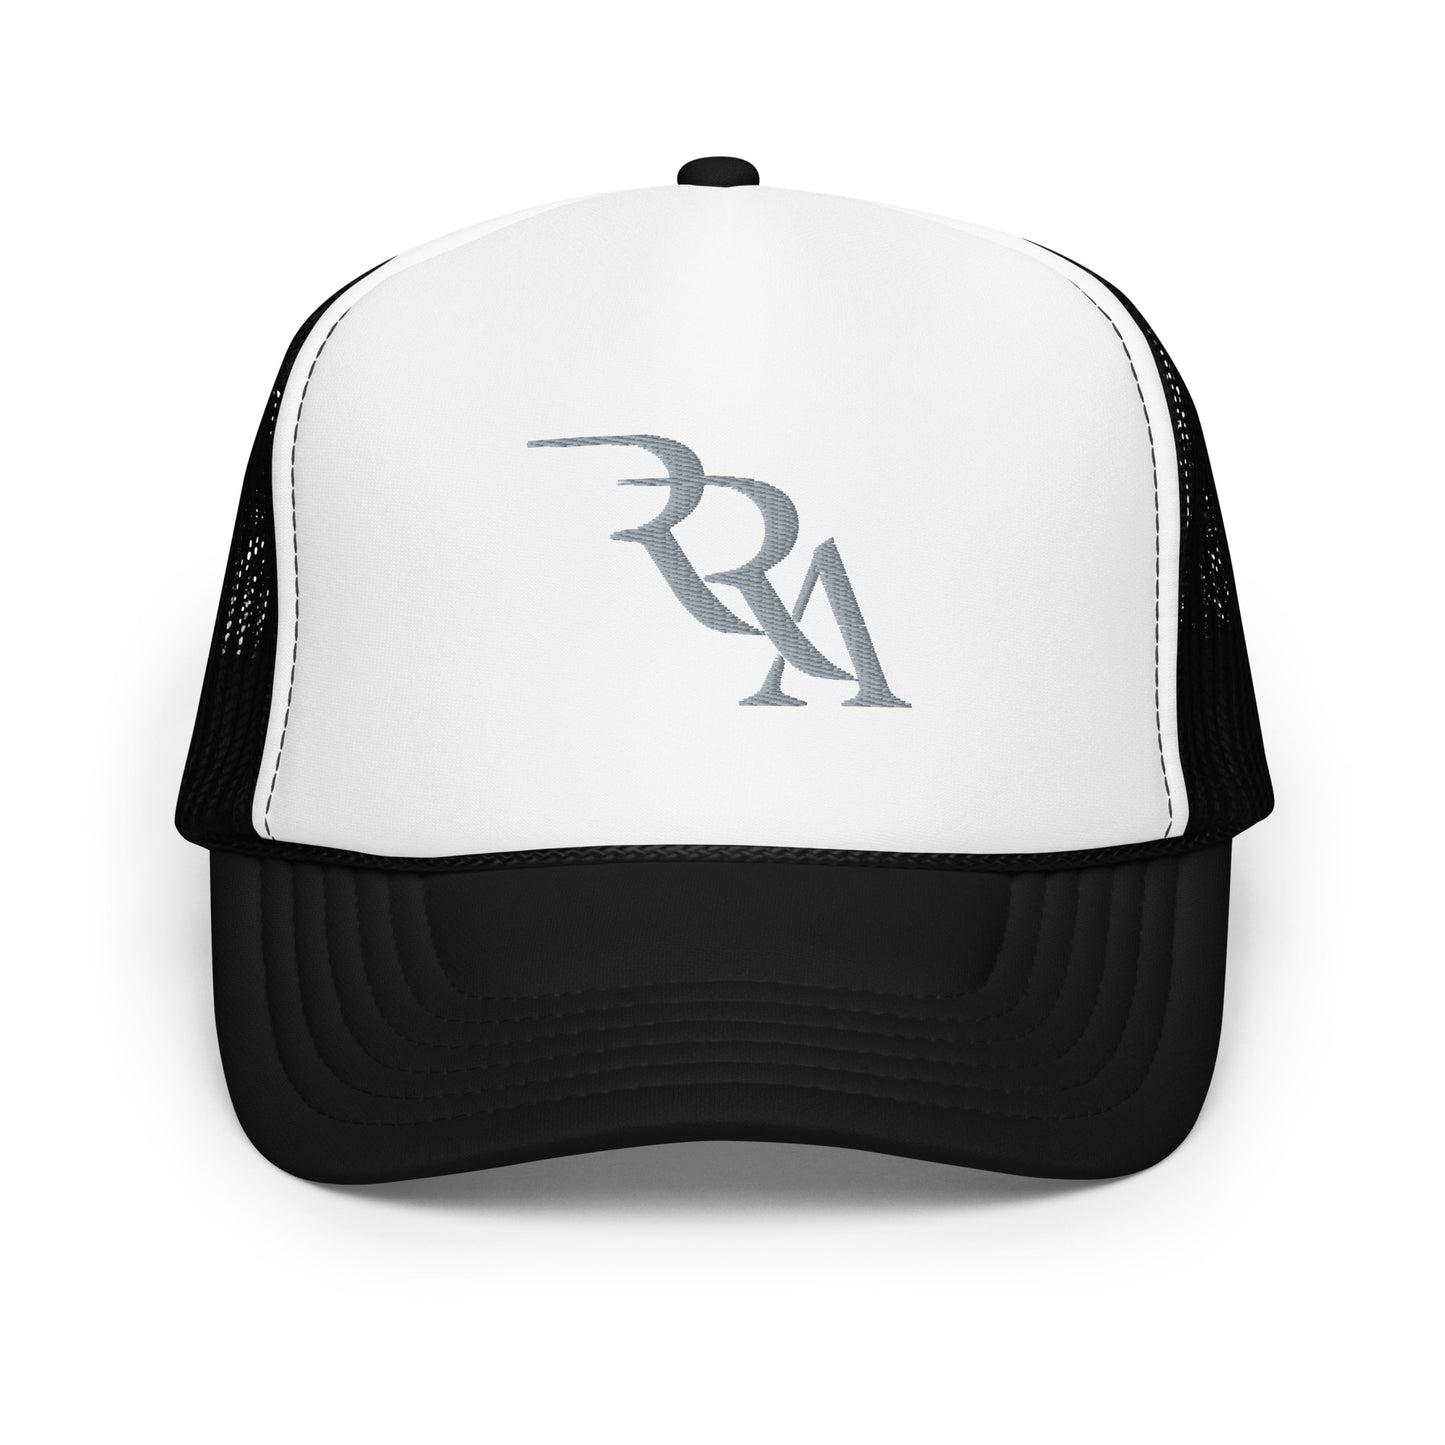 RRA - Silver Foam trucker hat